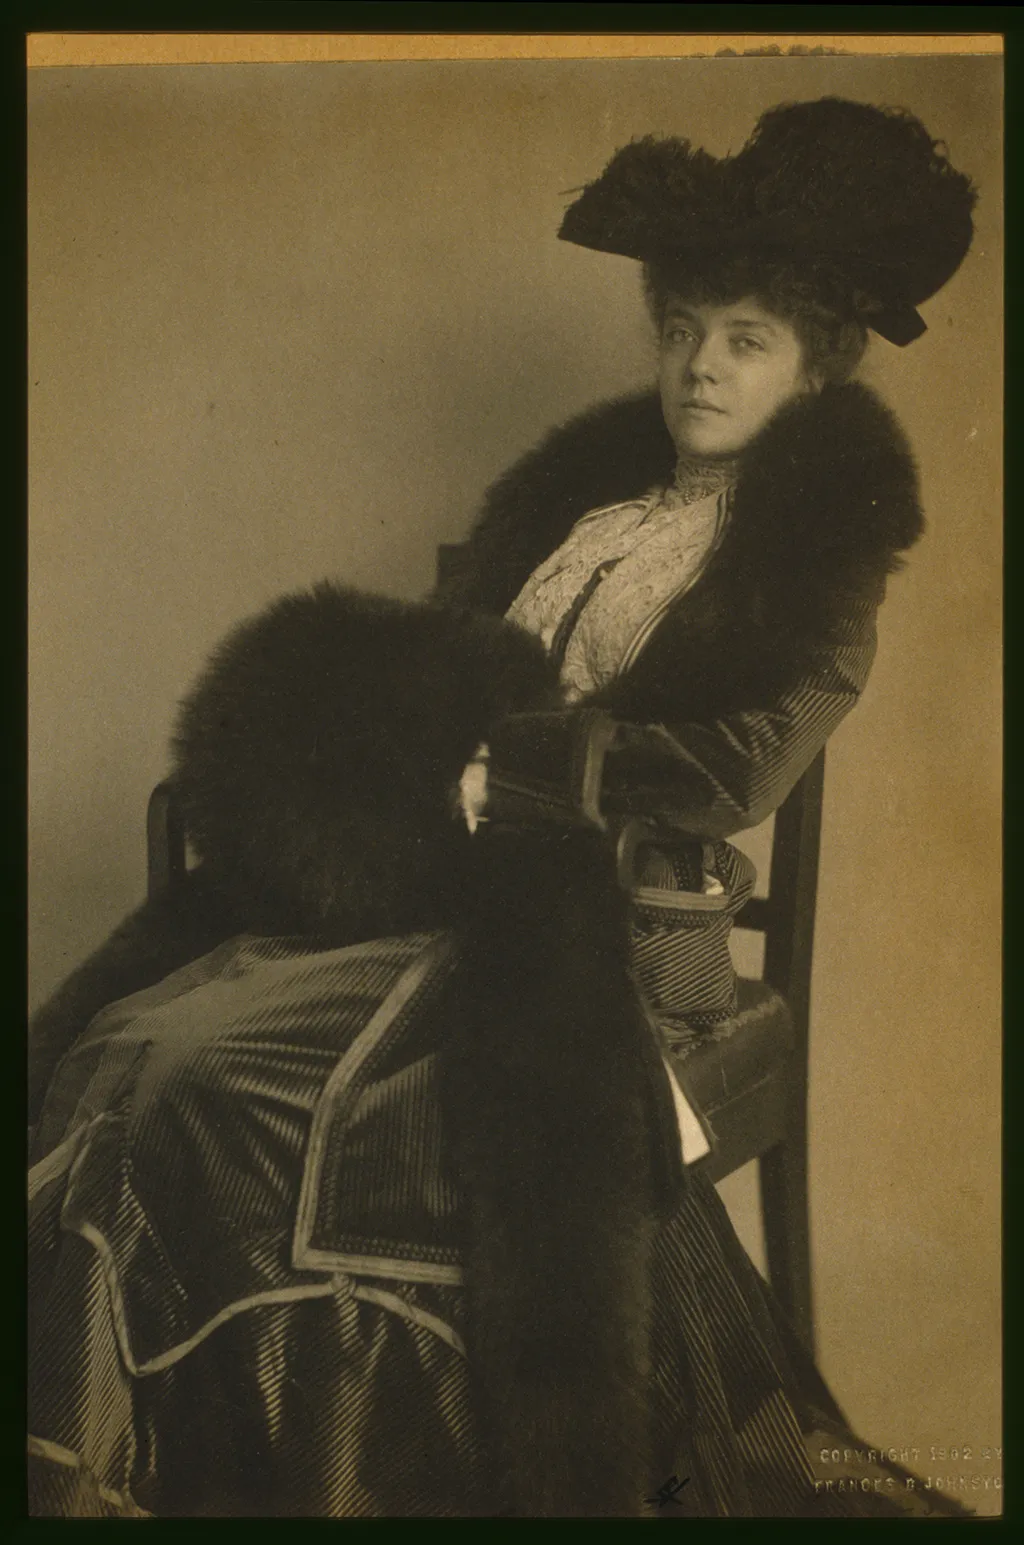 Circa 1902 portrait of Alice